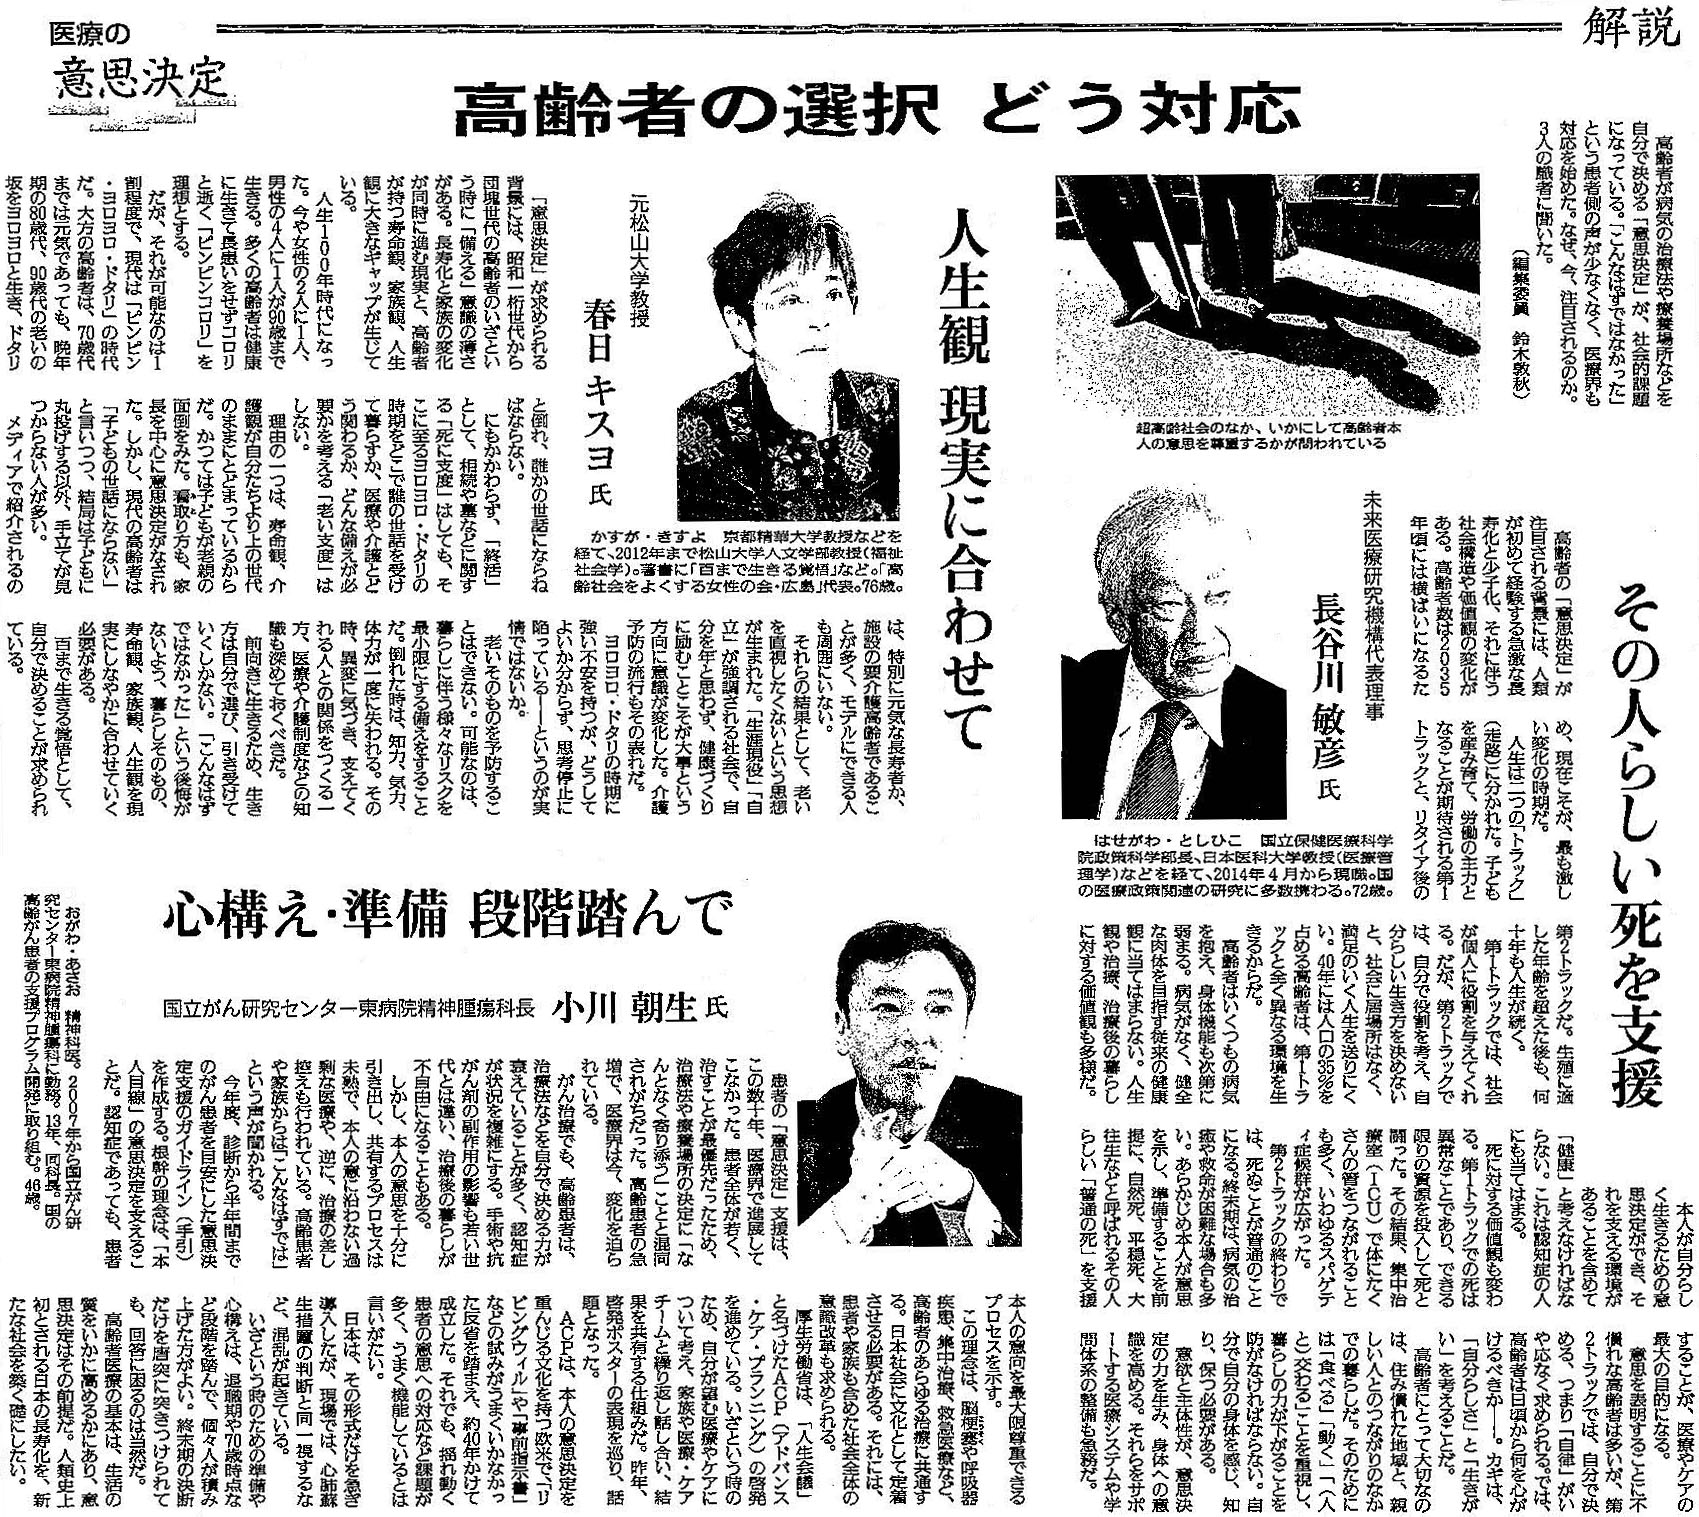 読売新聞 2020年1月29日掲載記事